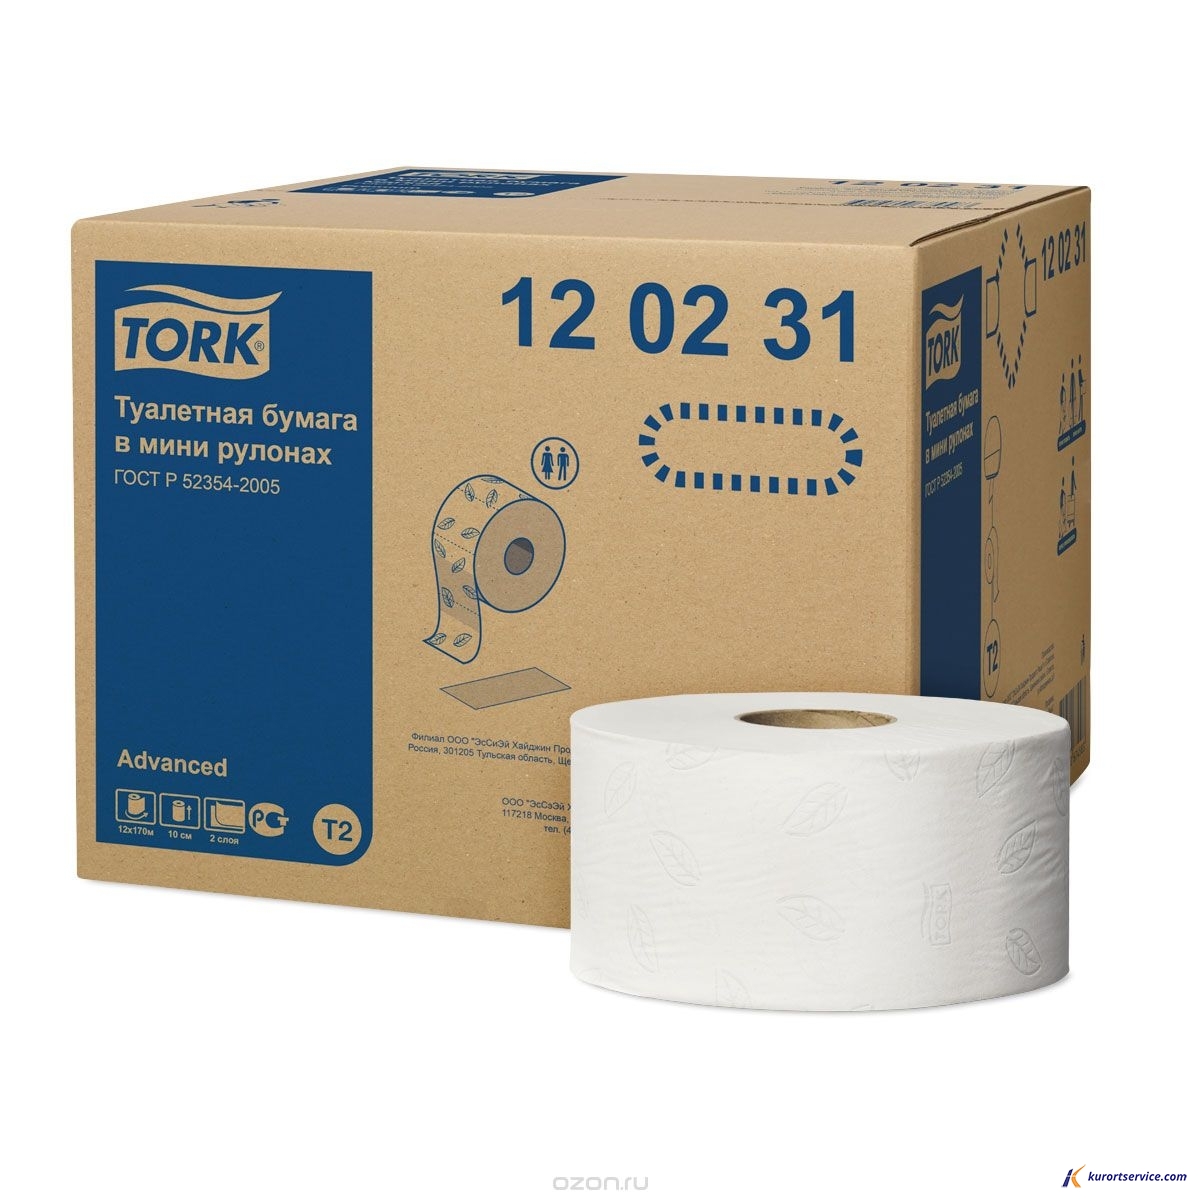 Tork Туалетная бумага в мини-рулонах 2сл 170м 120231 T2